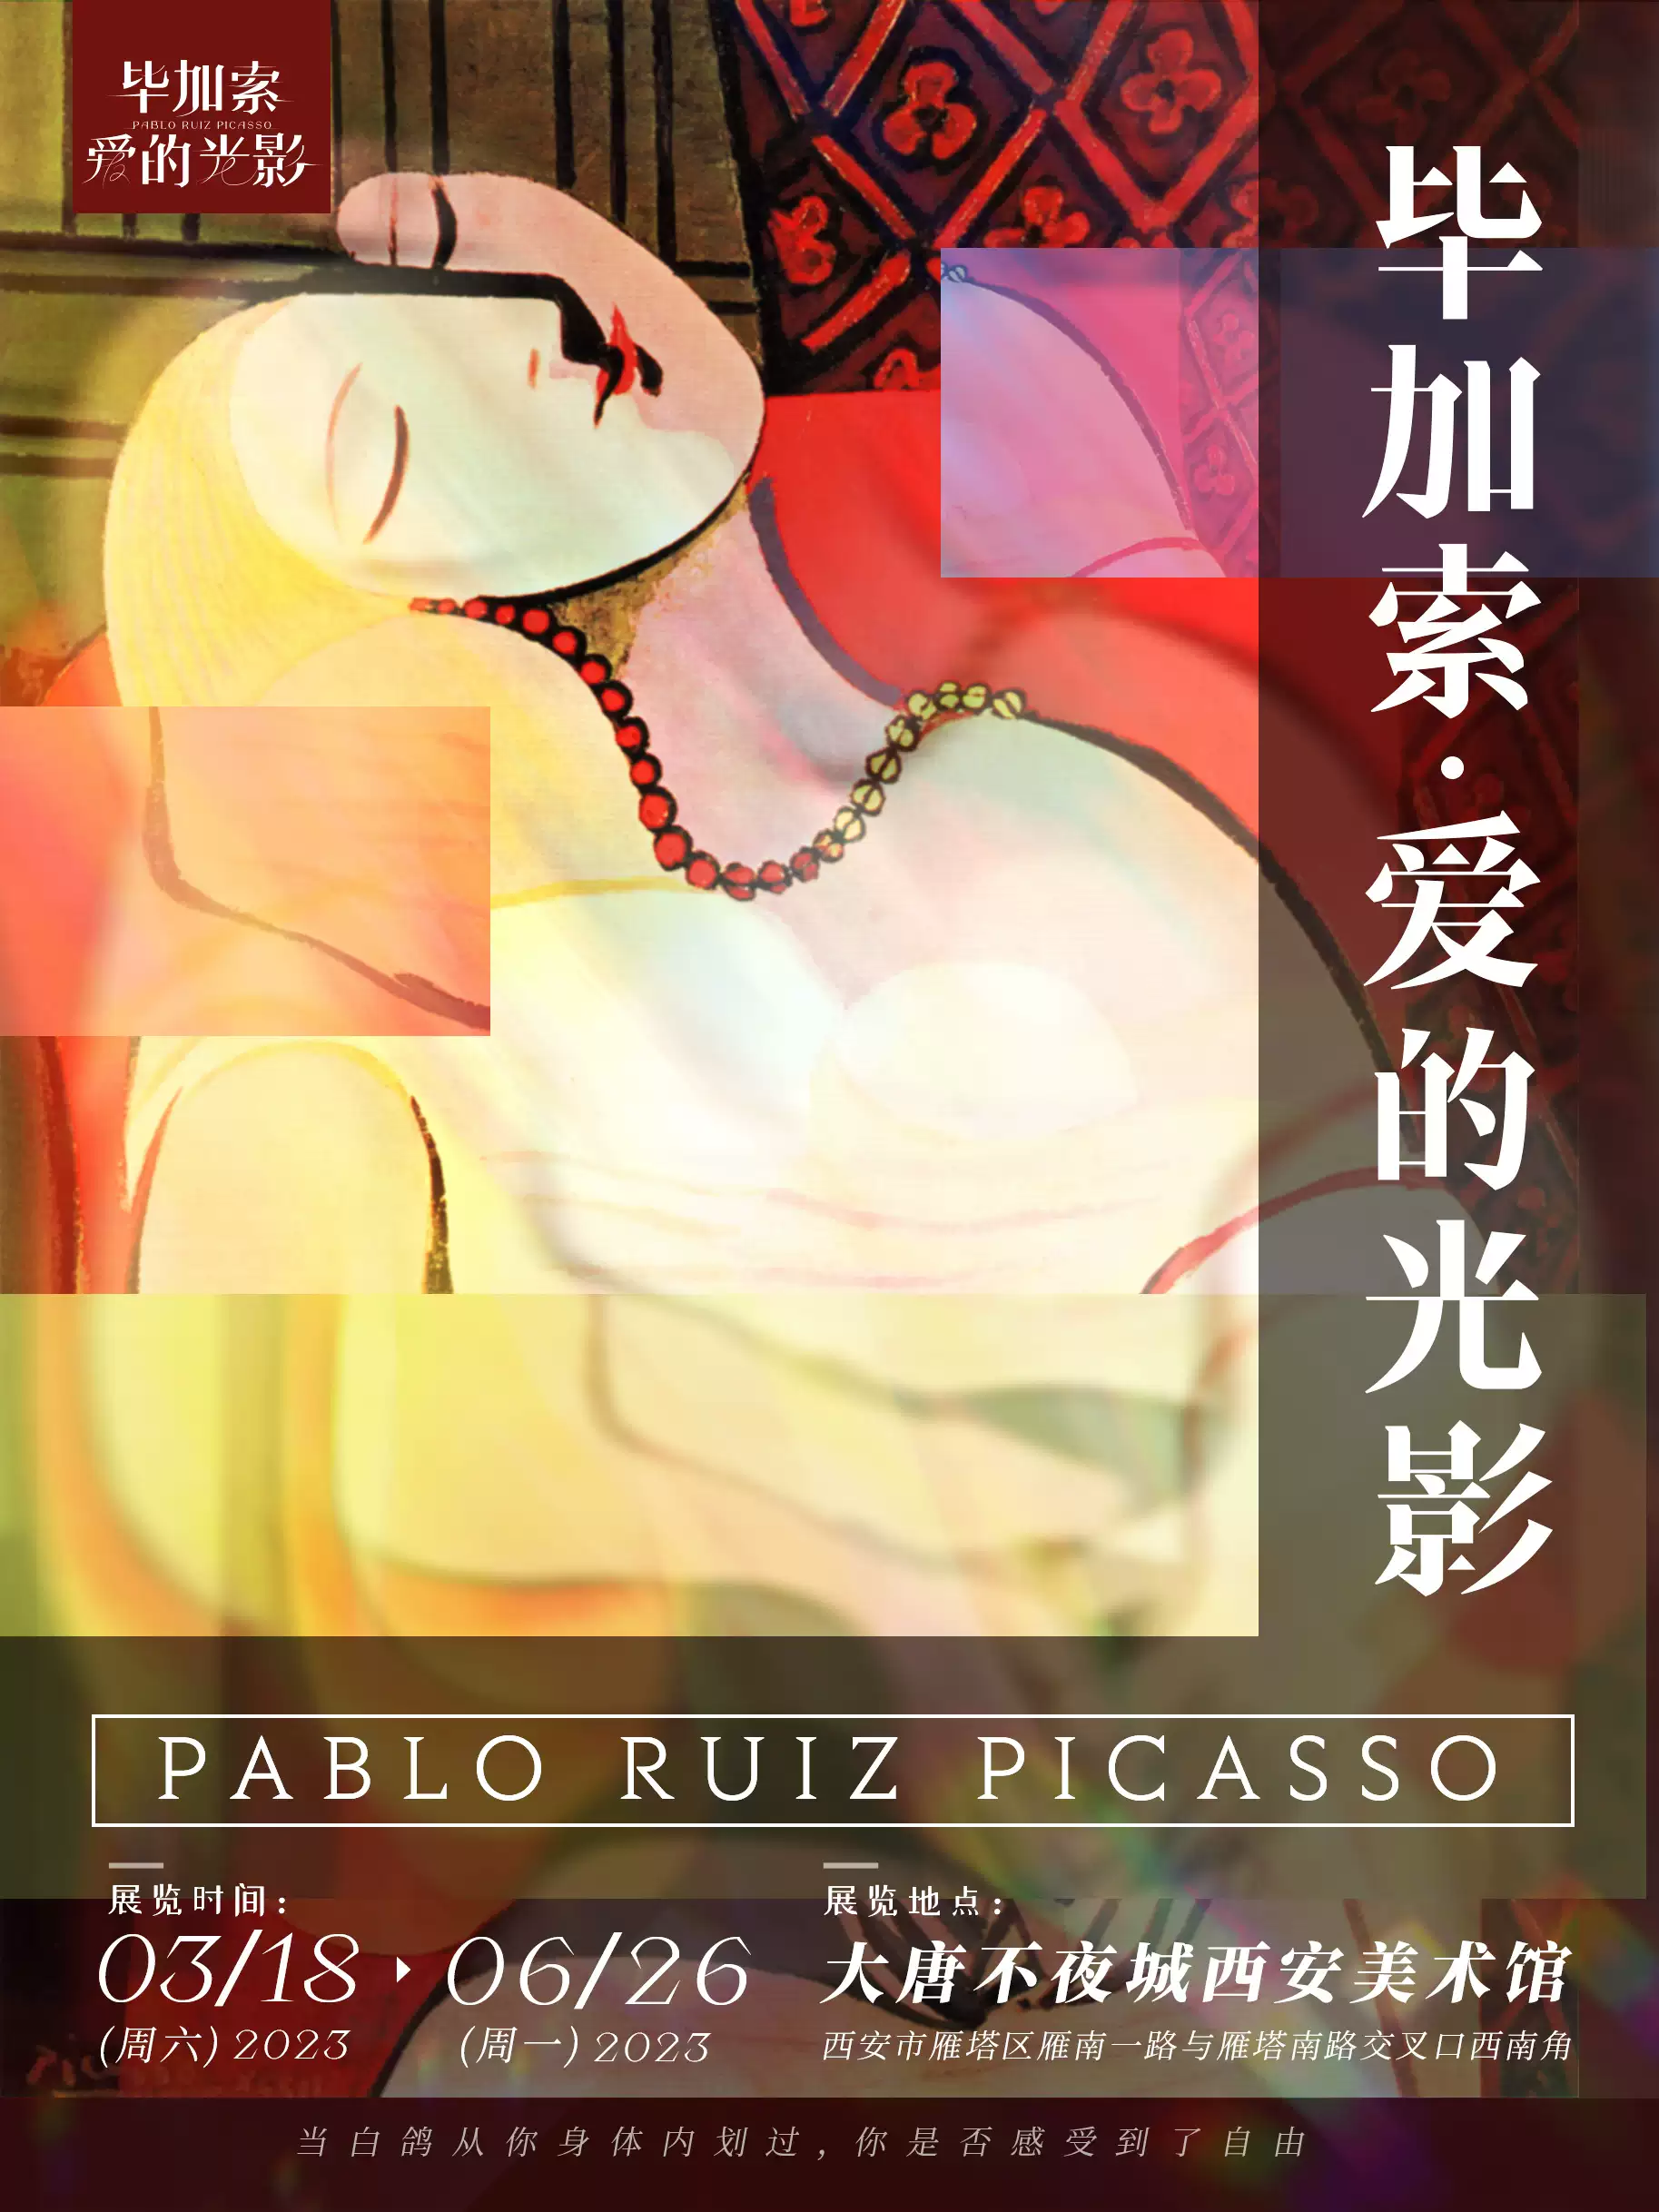 【西安】毕加索·爱的光影 沉浸艺术展 全球巡回中国首展